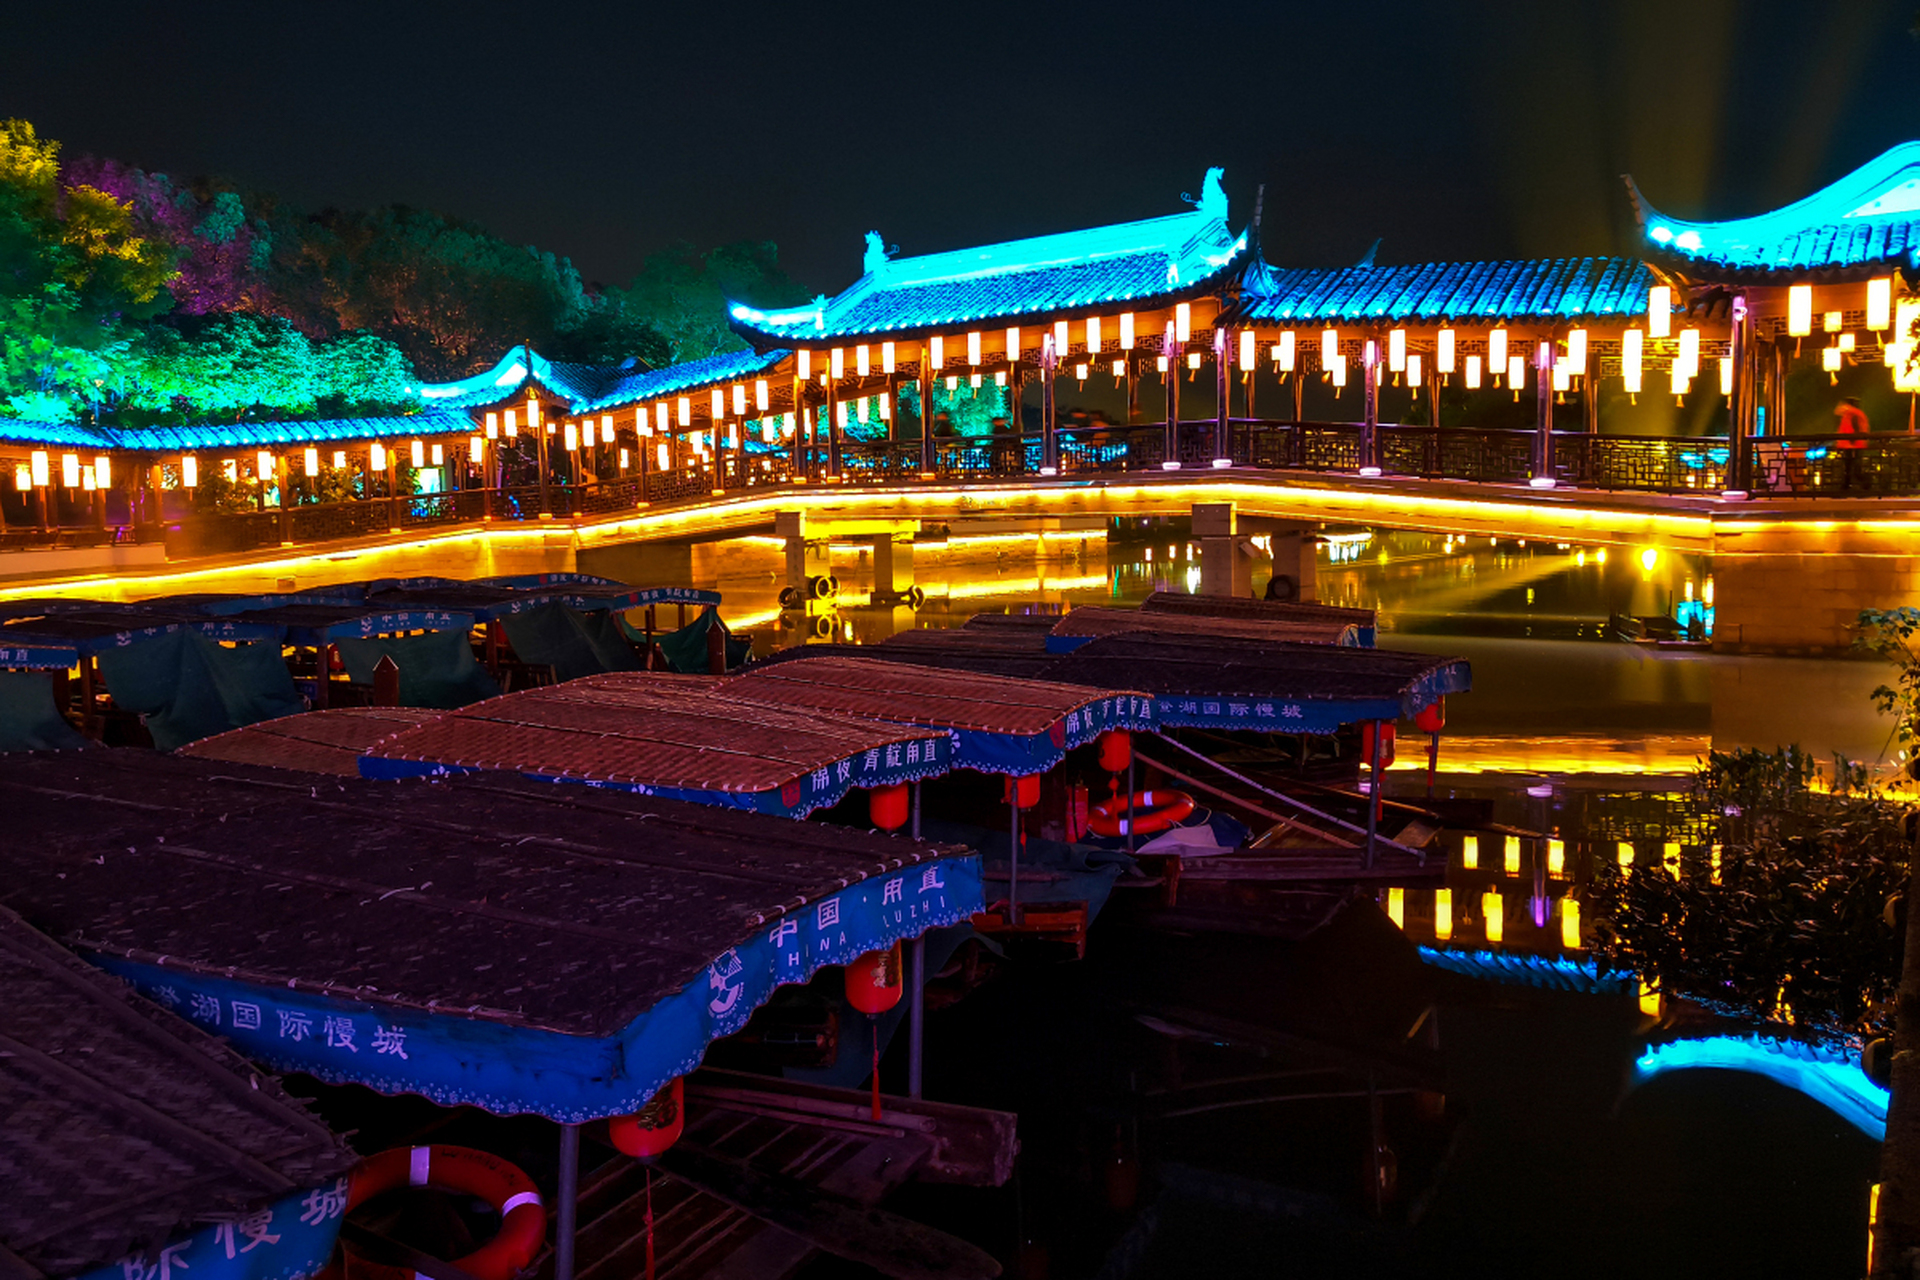 的锦江府南河边,微风拂面,晚饭后和朋友们一起散步,欣赏着美丽的夜景